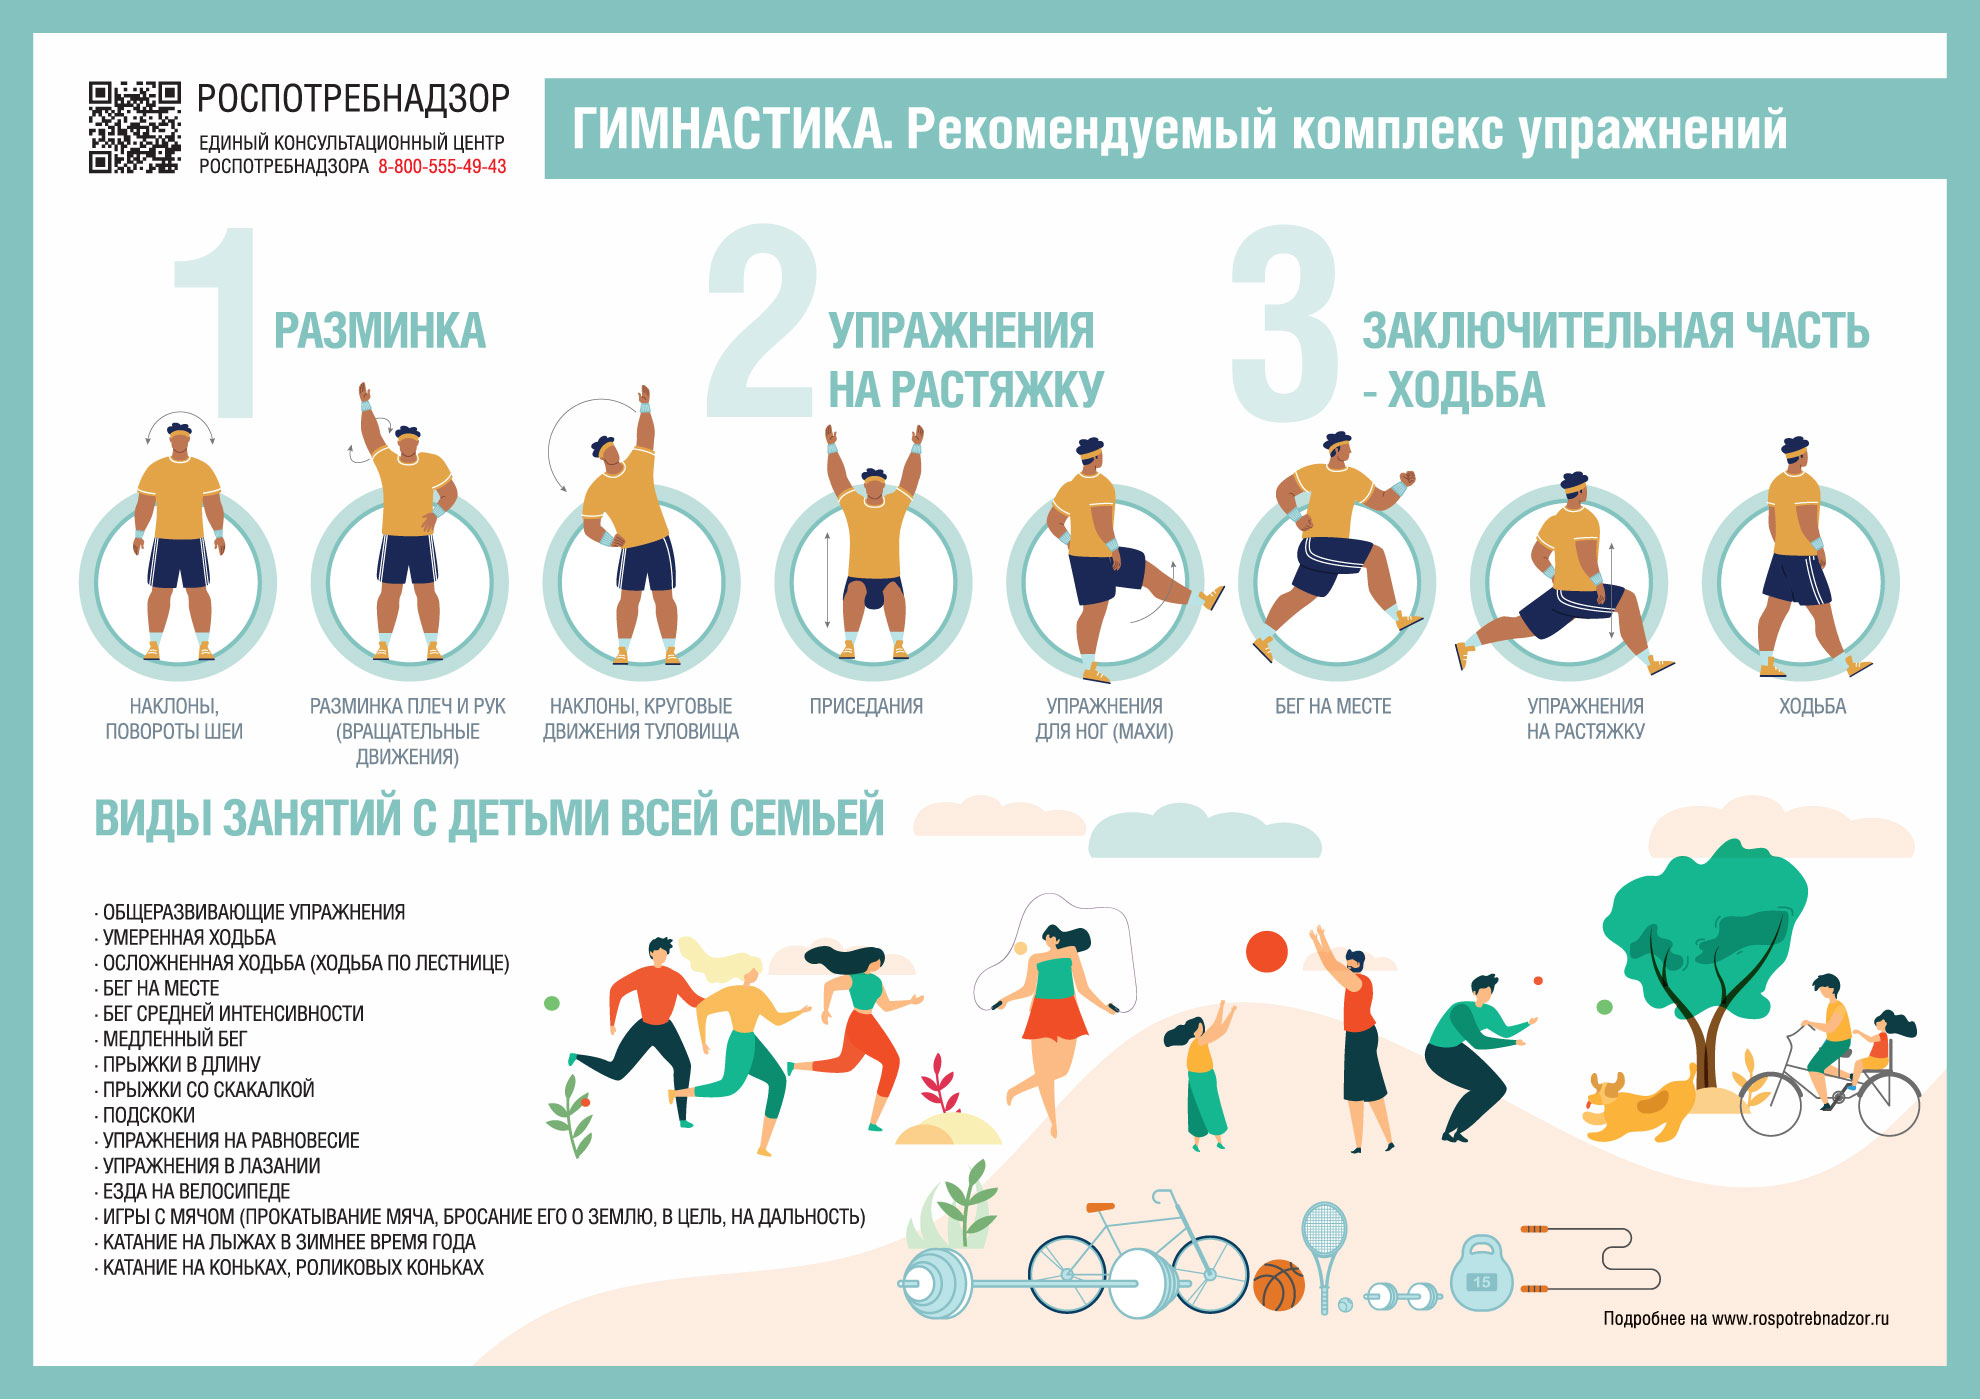 Почему занятие физкультурой и спортом - важно для поддержания здоровья и хорошей физической формы?